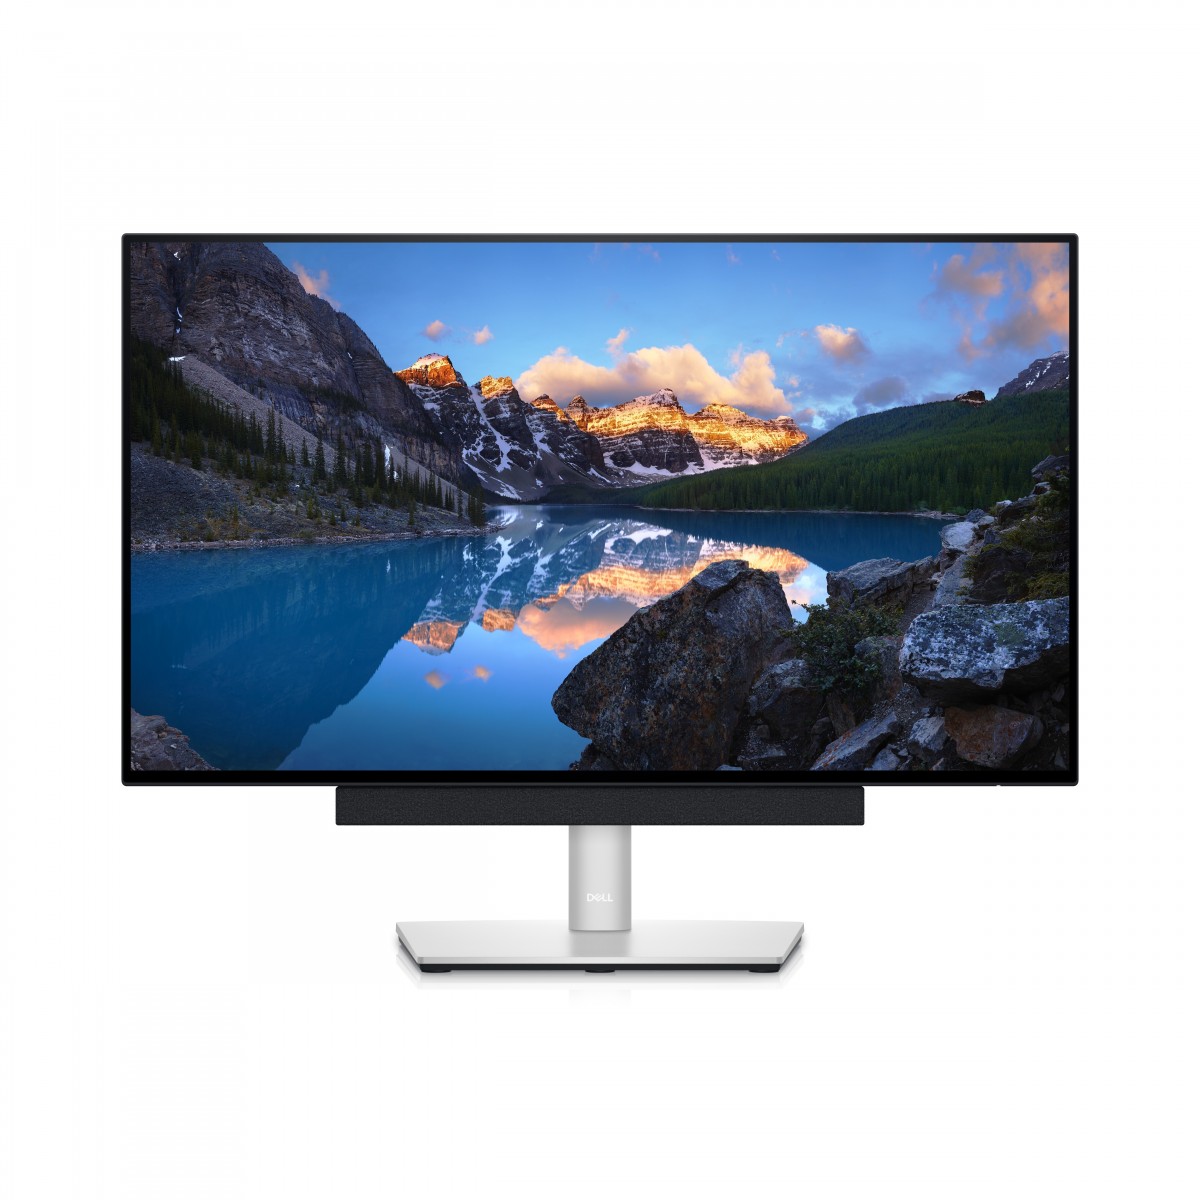 Dell UltraSharp U2422H - 61 cm (24) - 1920 x 1080 pixels - Full HD - LCD - 8 ms - Black - Silver